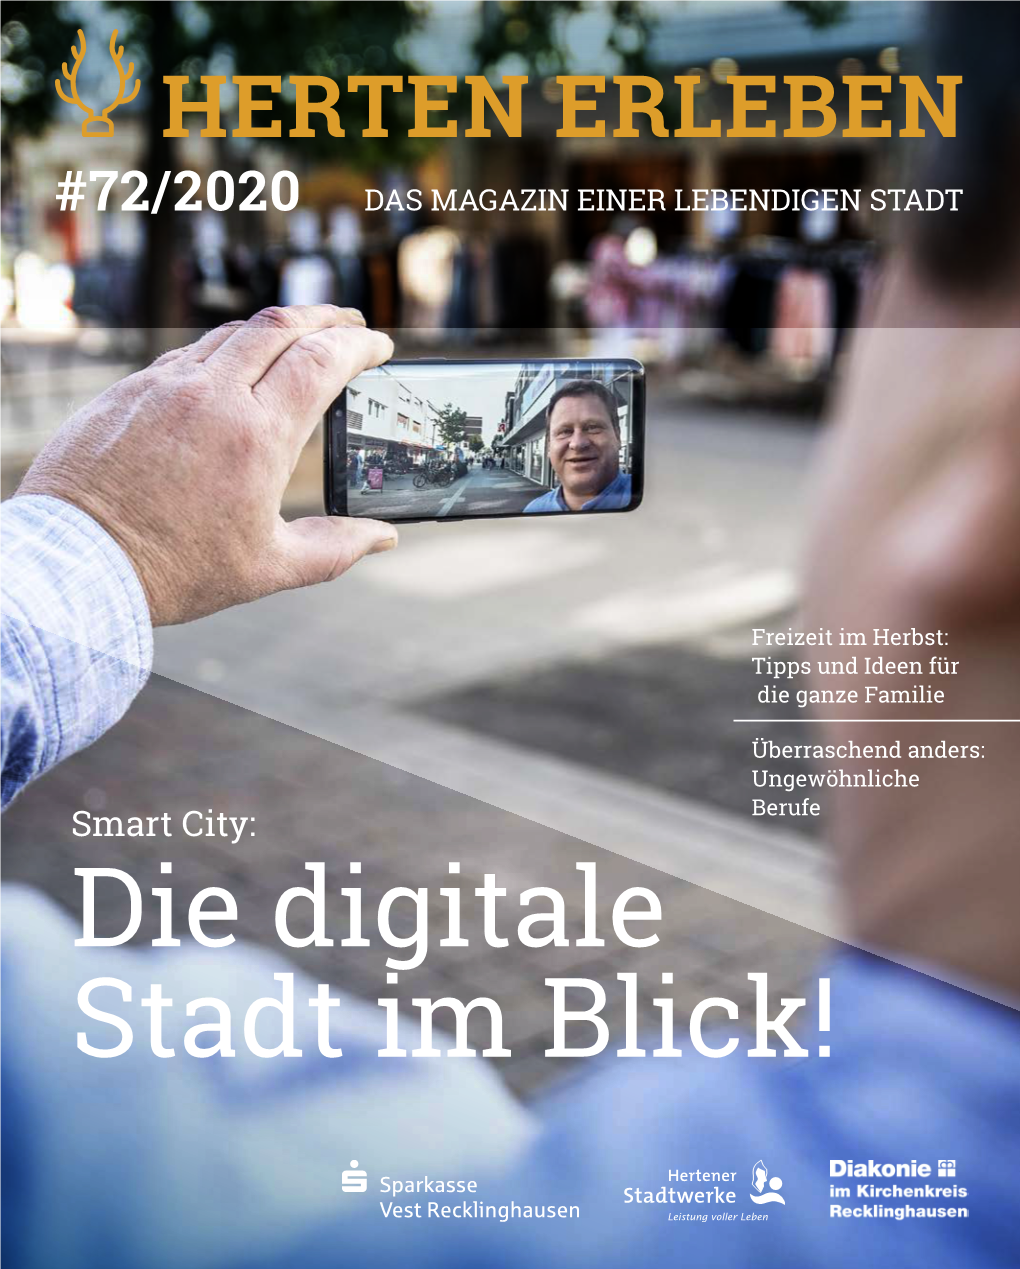 Herten Erleben #72/2020 Das Magazin Einer Lebendigen Stadt